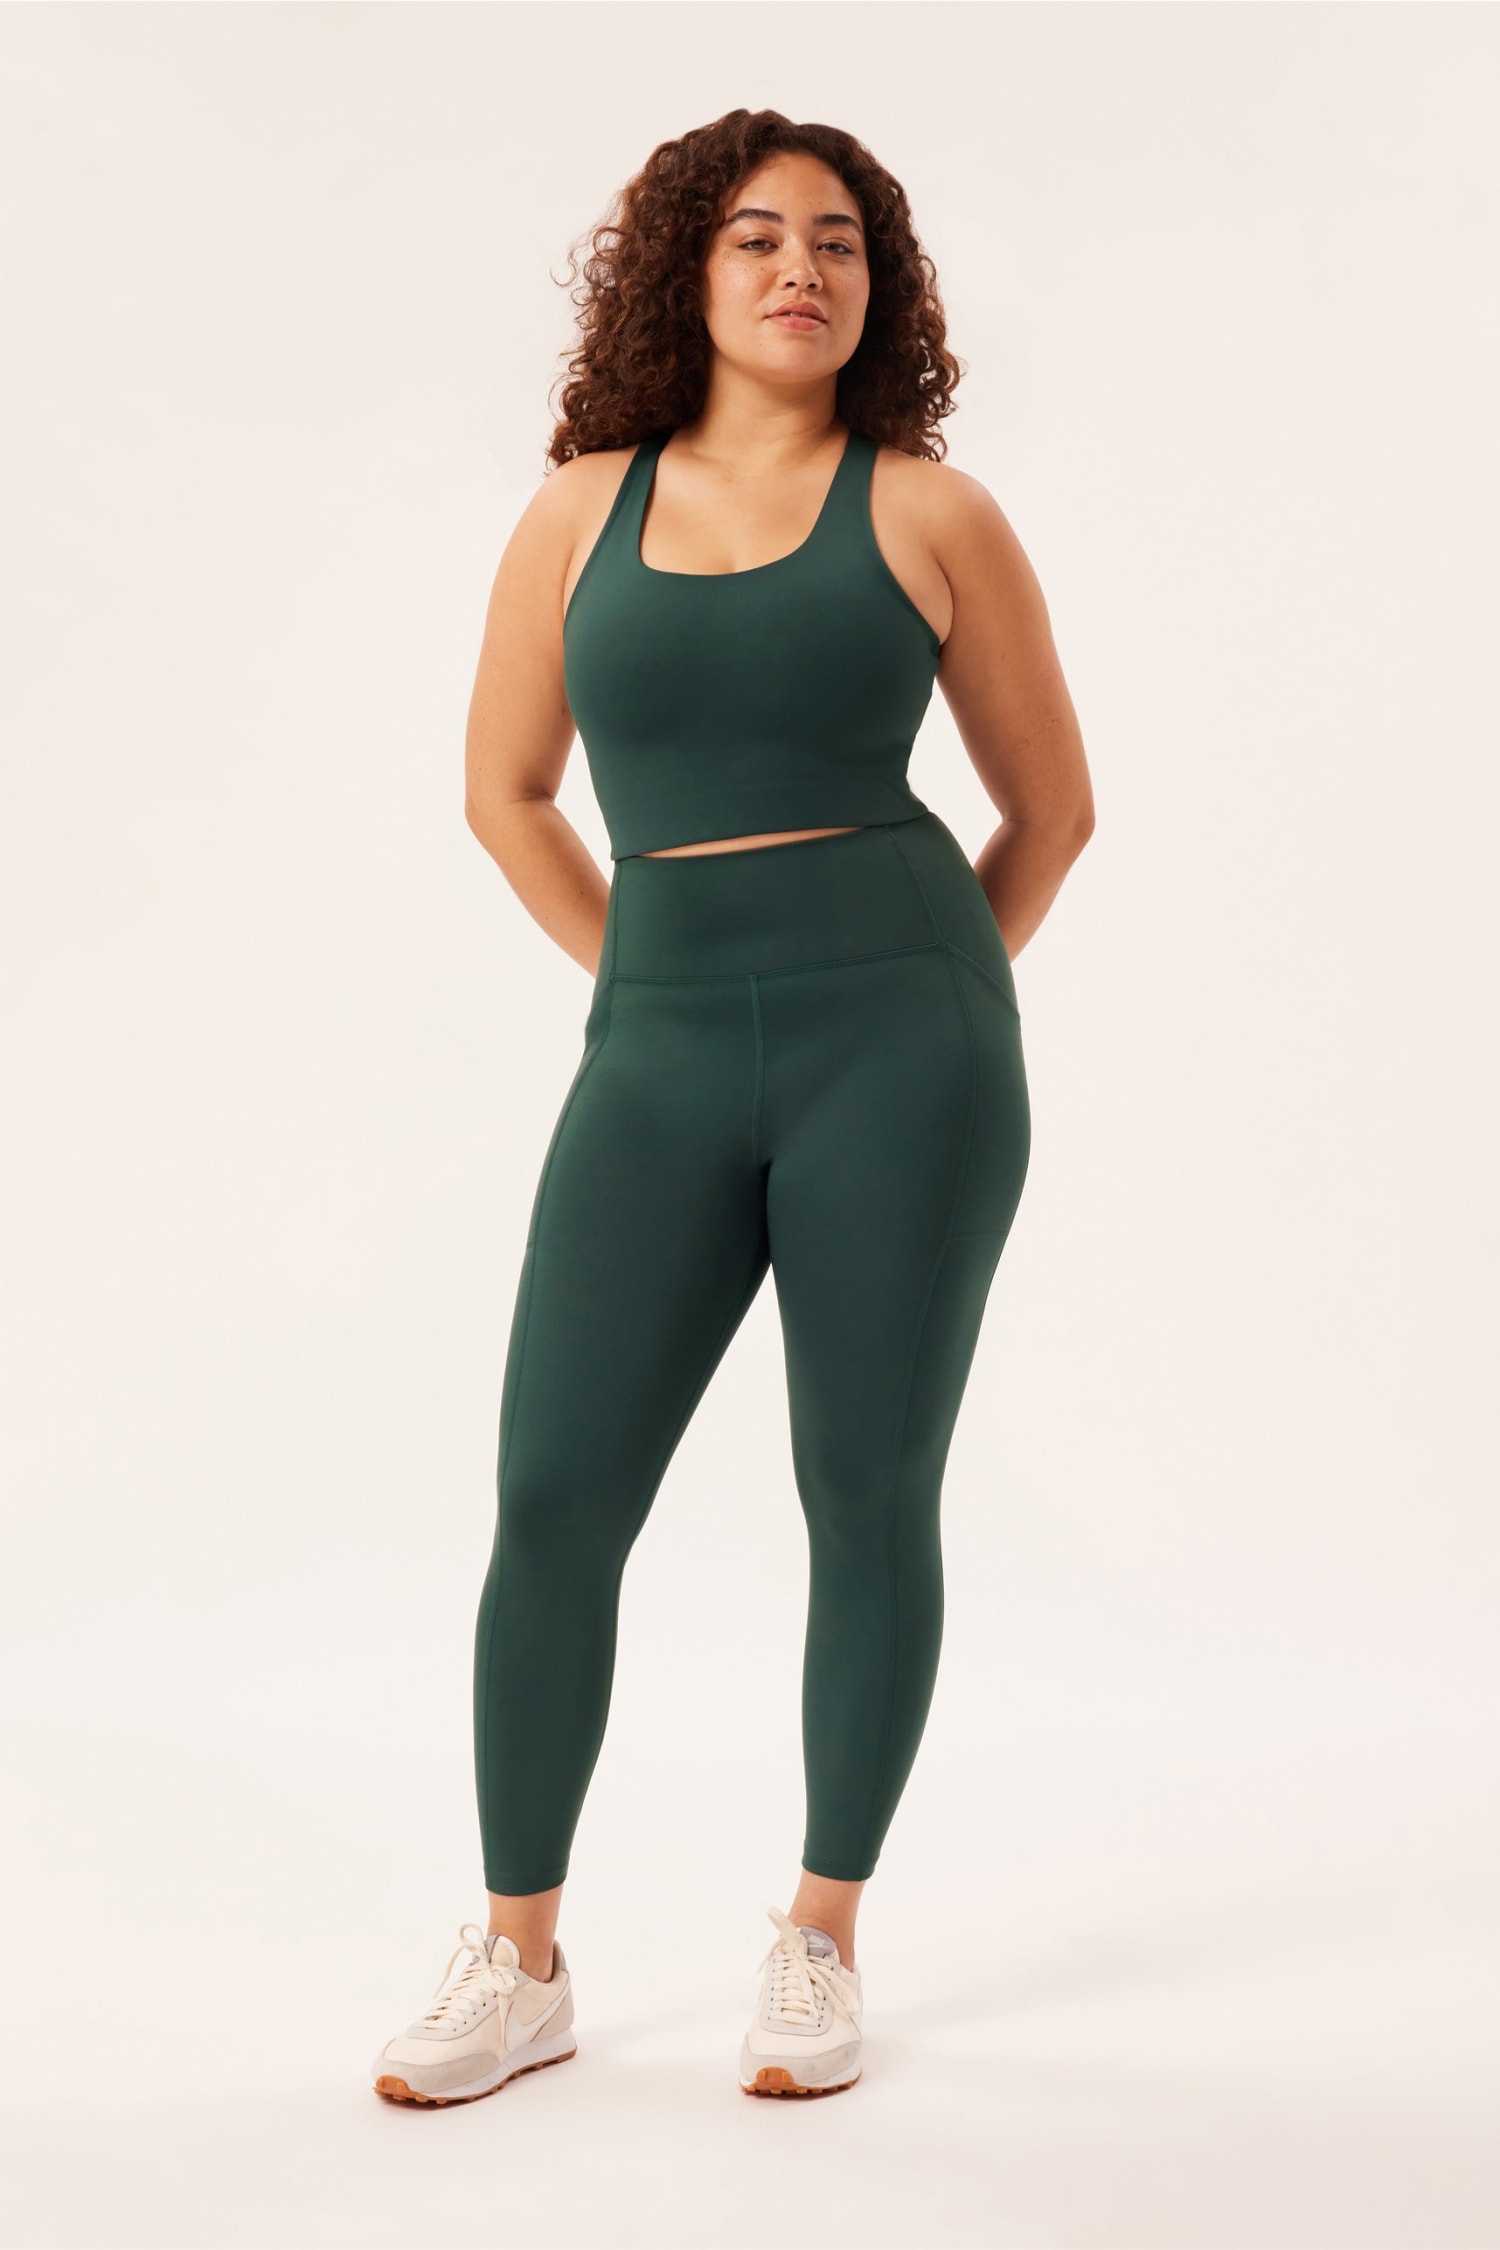 Pocket Capris - Evergreen  Plus size outfits, Plus size activewear, Plus  size workout